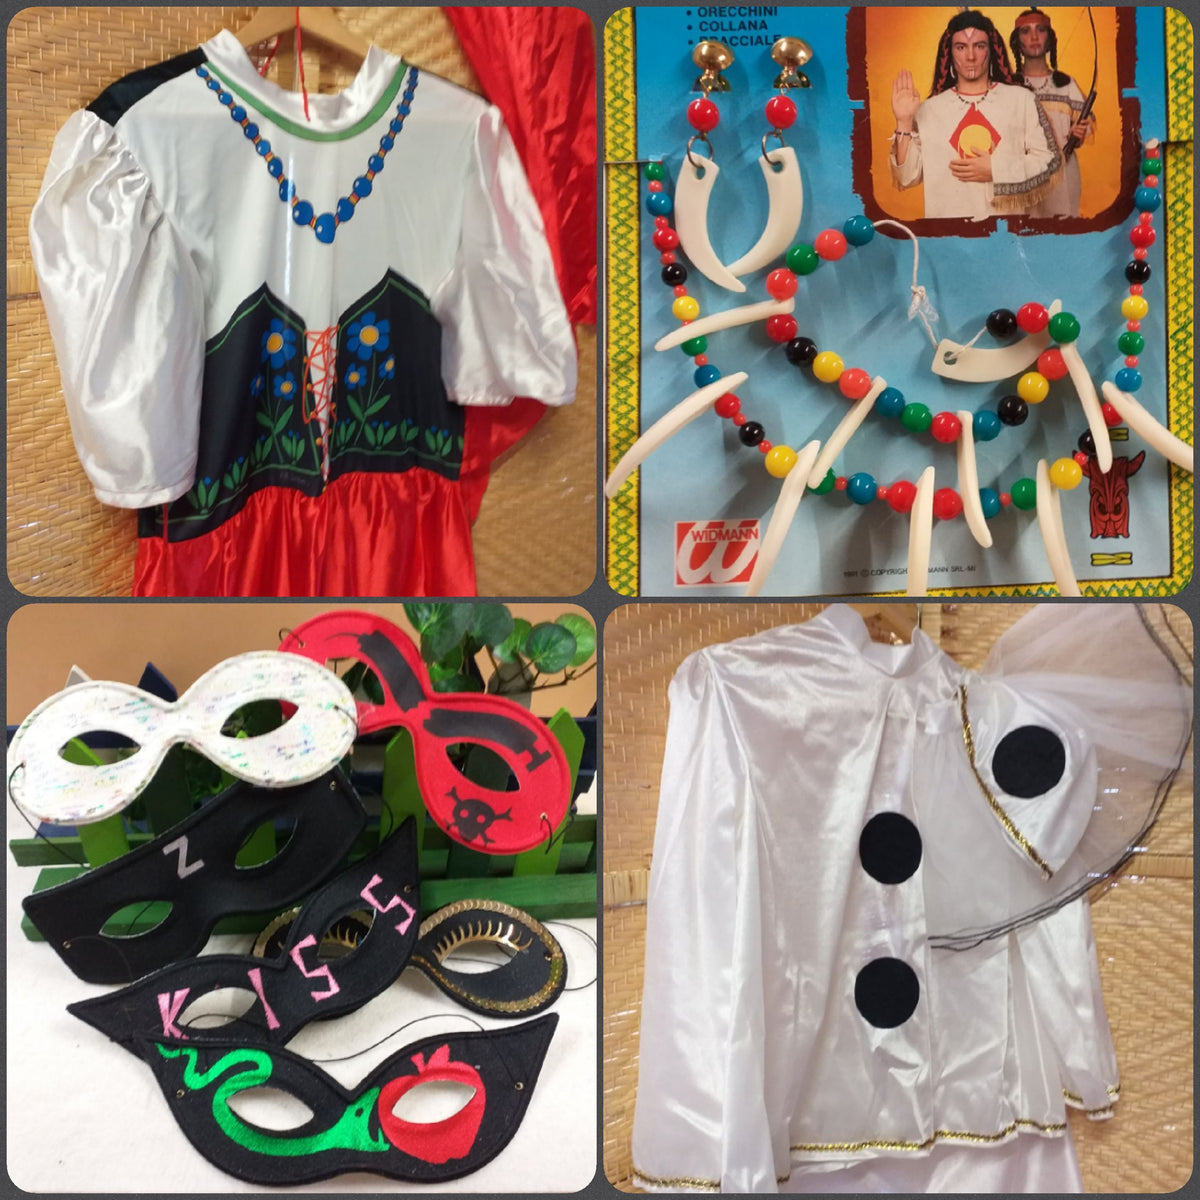 Accessori e costumi Carnevale fai da te maschere vestiti feste a tema –  Tagged perline-perle-plastica – hobbyshopbomboniere